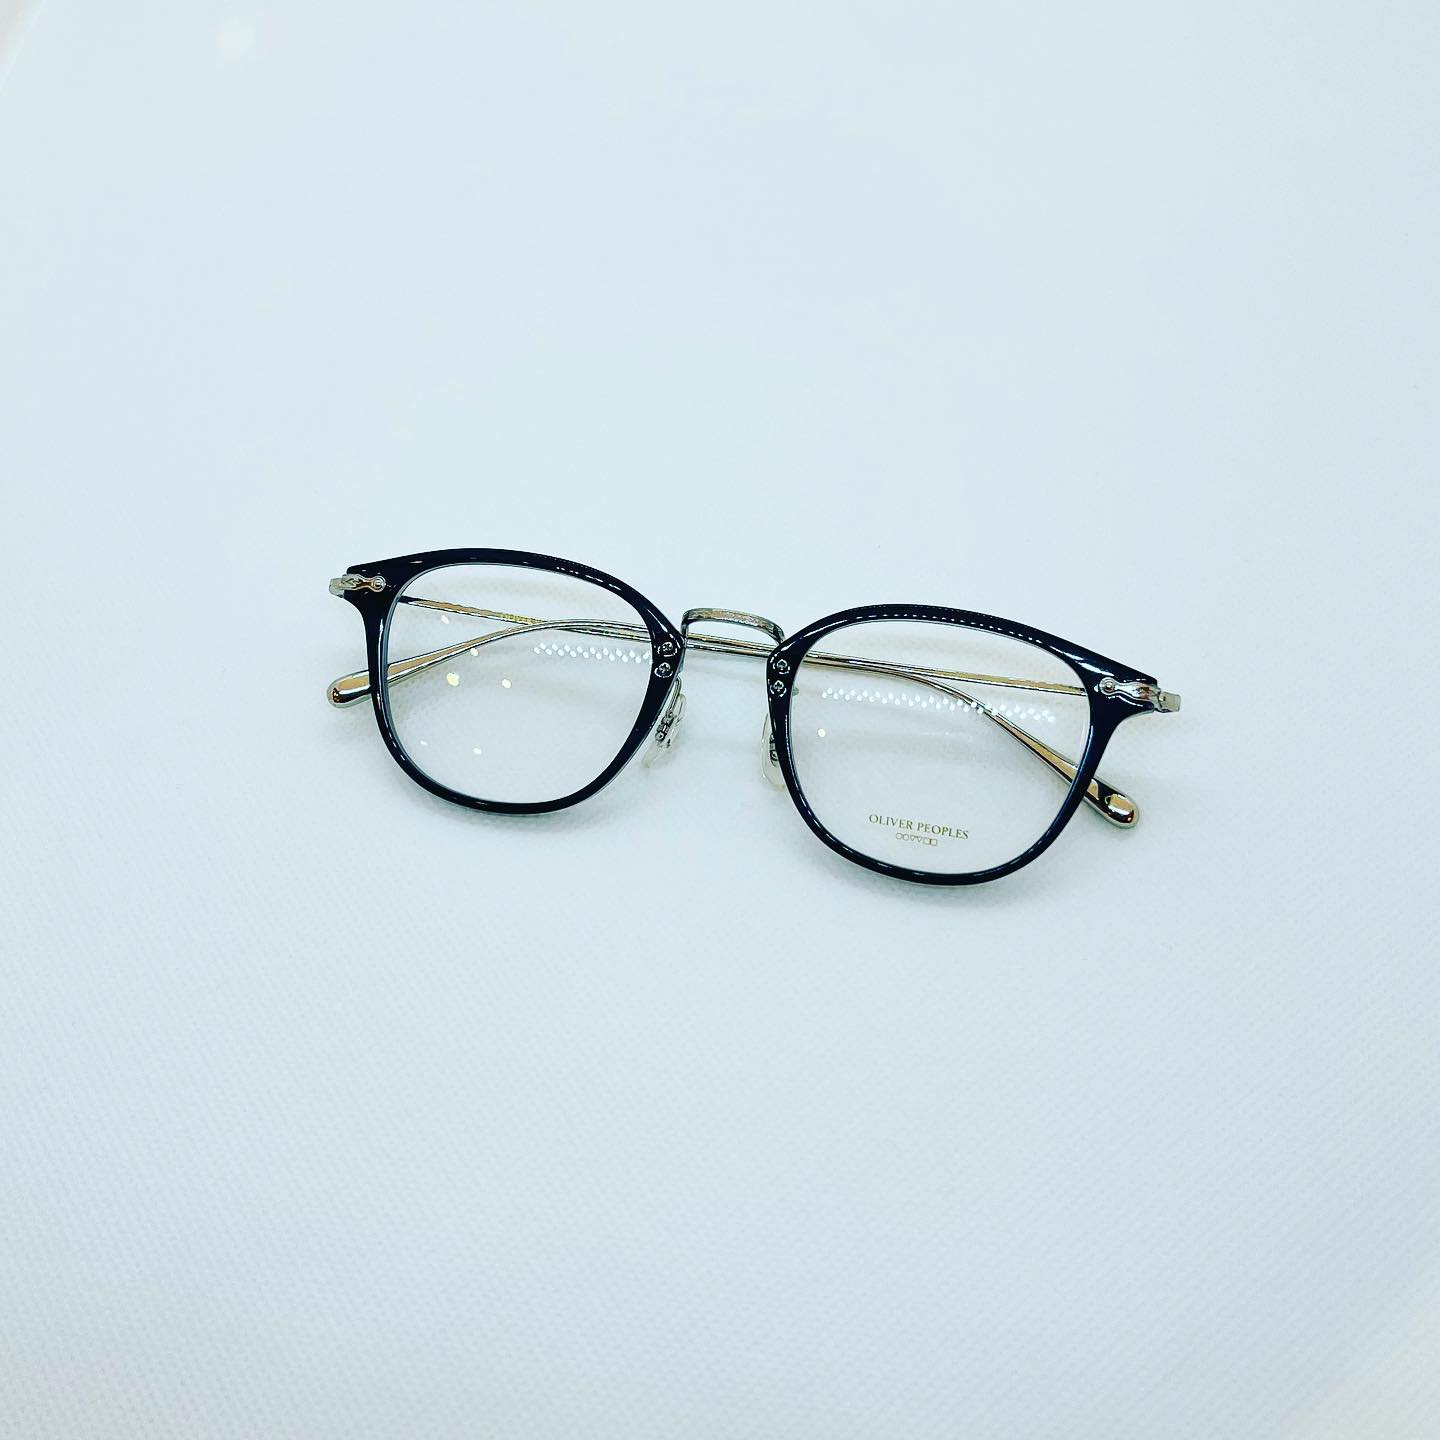 Oliver PeoplesModel : DAVITTSize : 48Color : 1662オリバーピープルズが得意とする、セルとメタルのコンビネーションモデルです。チタン製のメタルパーツには繊細な彫金が施されていて上品な雰囲気があります。また非常に軽く、かけ心地も良いので、常に眼鏡を掛ける方には特におすすめです。是非お試し下さい。#sunglasses #サングラス#眼鏡 #メガネ#オリバーピープルズ #oliverpeoples#eyewear #アイウェア#メガネ屋　#メガネコーデ#メガネ部 #メガネ男子 #メガネ女子#長崎 #ココウォーク #浦上駅#北九州 #小倉 #リバーウォーク#小倉城 #紫川#湘南 #平塚 #ららぽーと湘南平塚#東京 #お台場 #ダイバーシティ東京#creer #クレエ